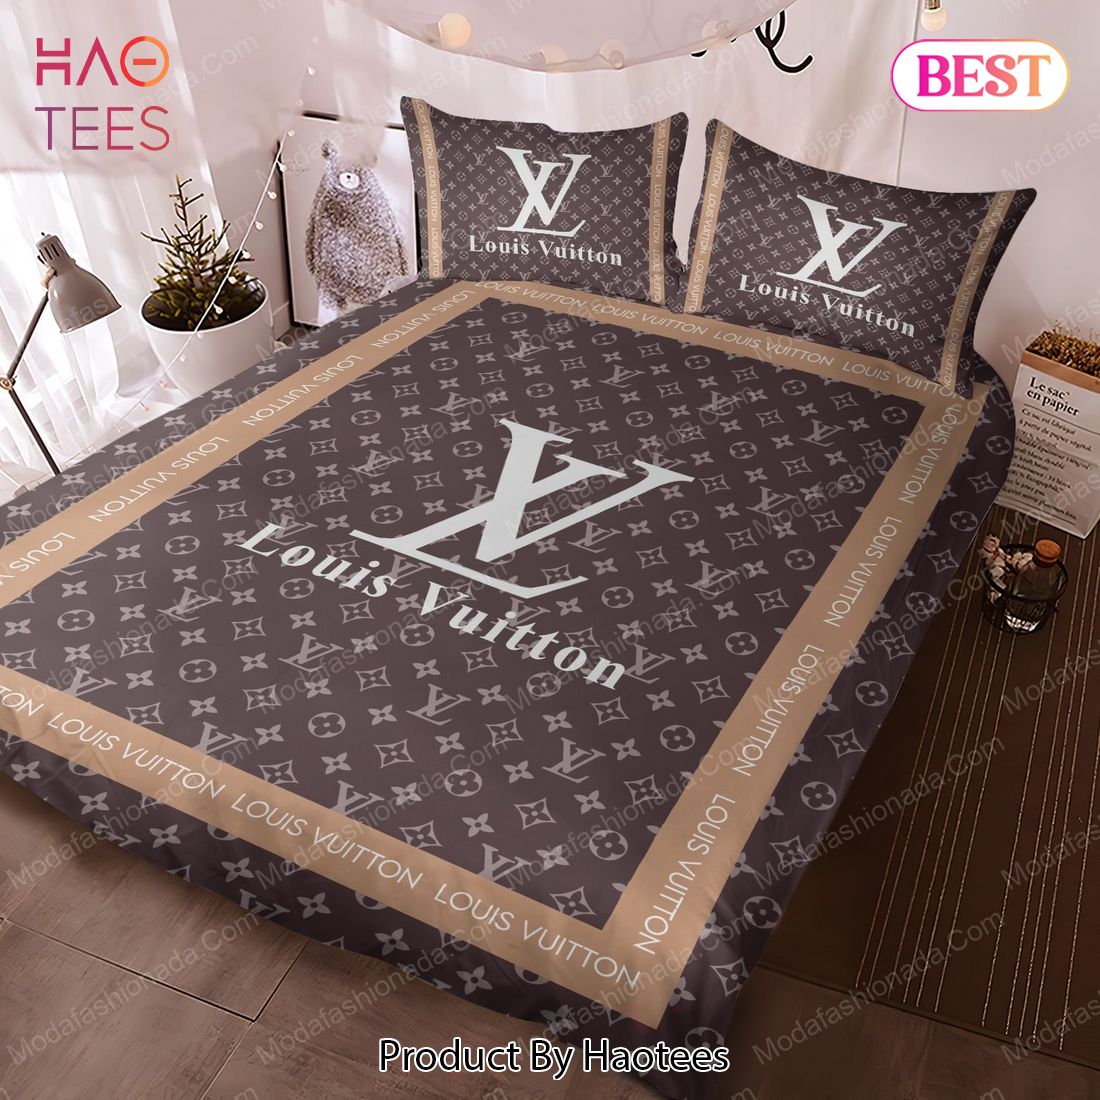 Buy Louis Vuitton Luxury Brands 23 Bedding Set Bed Sets, Bedroom Sets, Comforter  Sets, Duvet Cover